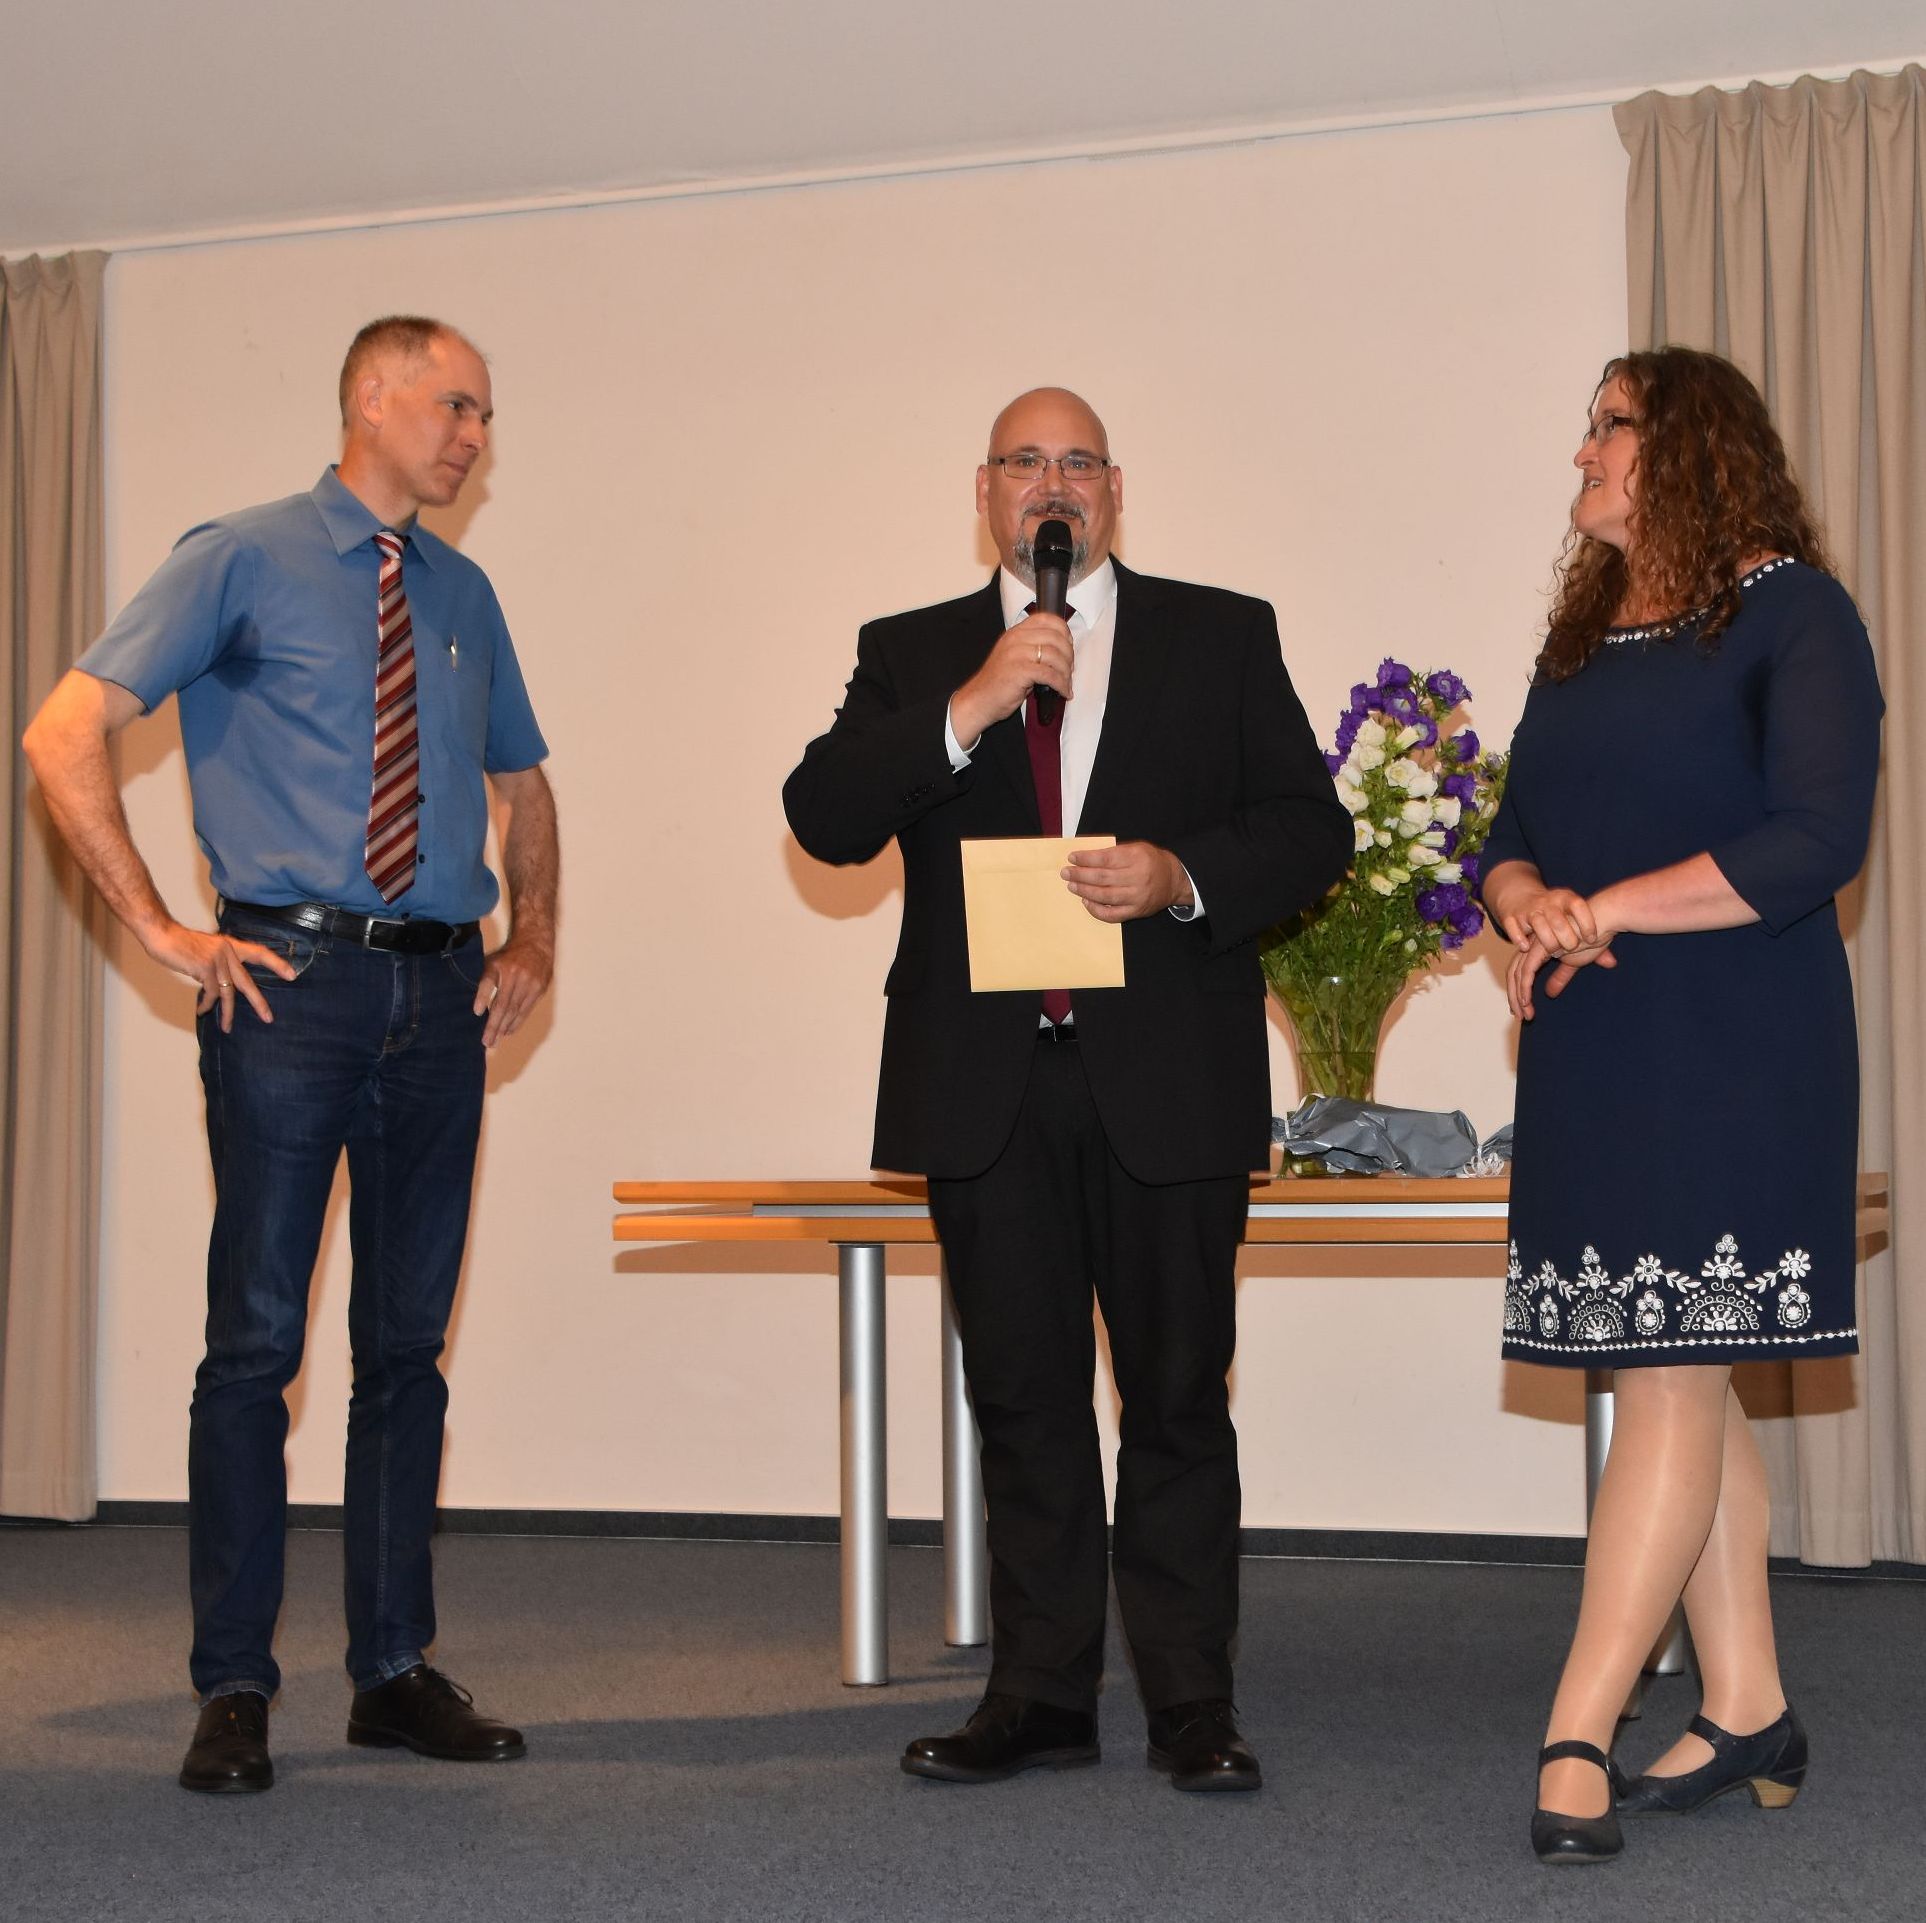 Verabschiedung von Veit Claesberg als dem Dienst als Pastoralreferent der EFG Wiedenest, mit Manuel Lüling und Alexandra Claesberg